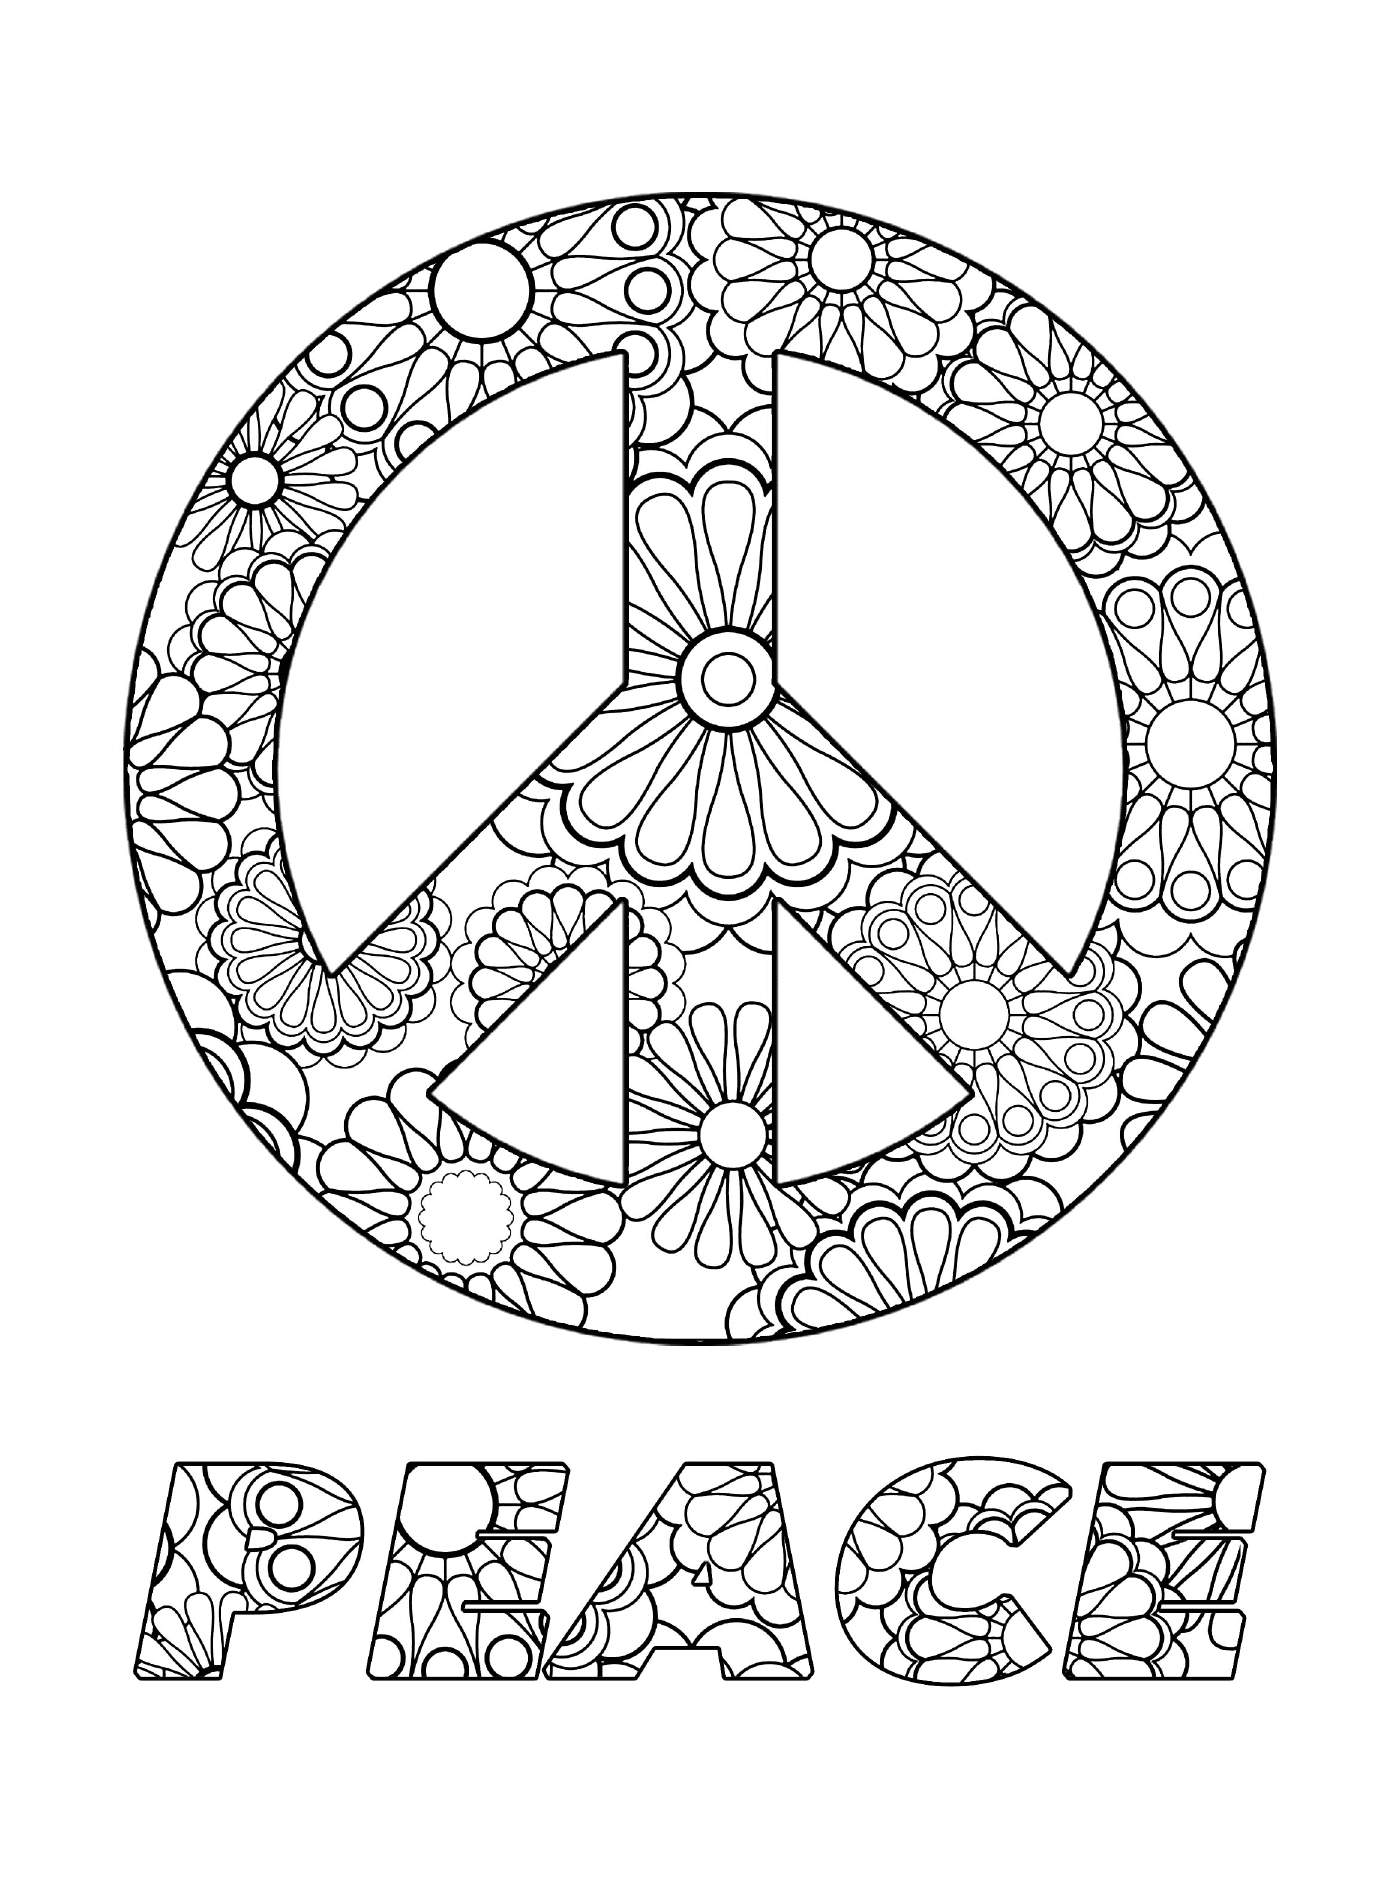   Symbole de paix avec fleurs 